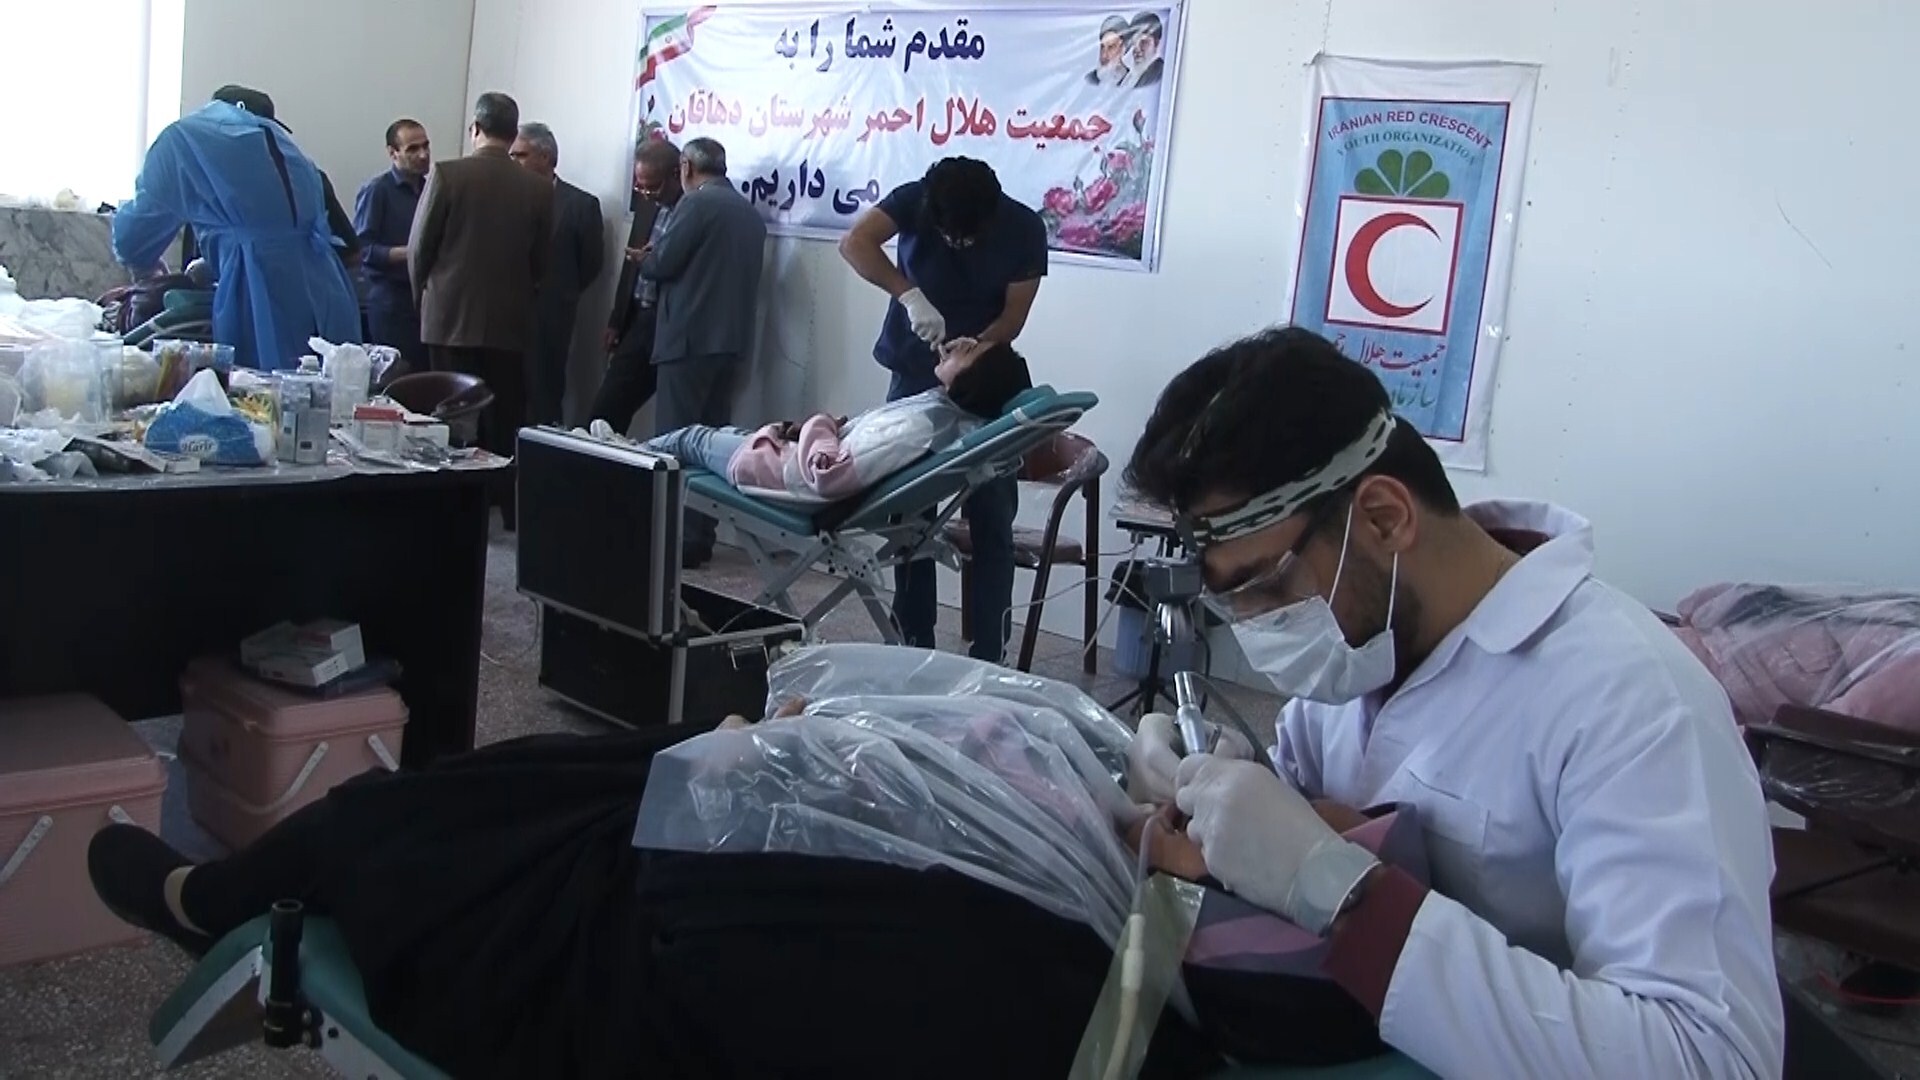 ارائه خدمات دندانپزشکی گروه جهادی حیدرکرار در شهرستان دهاقان